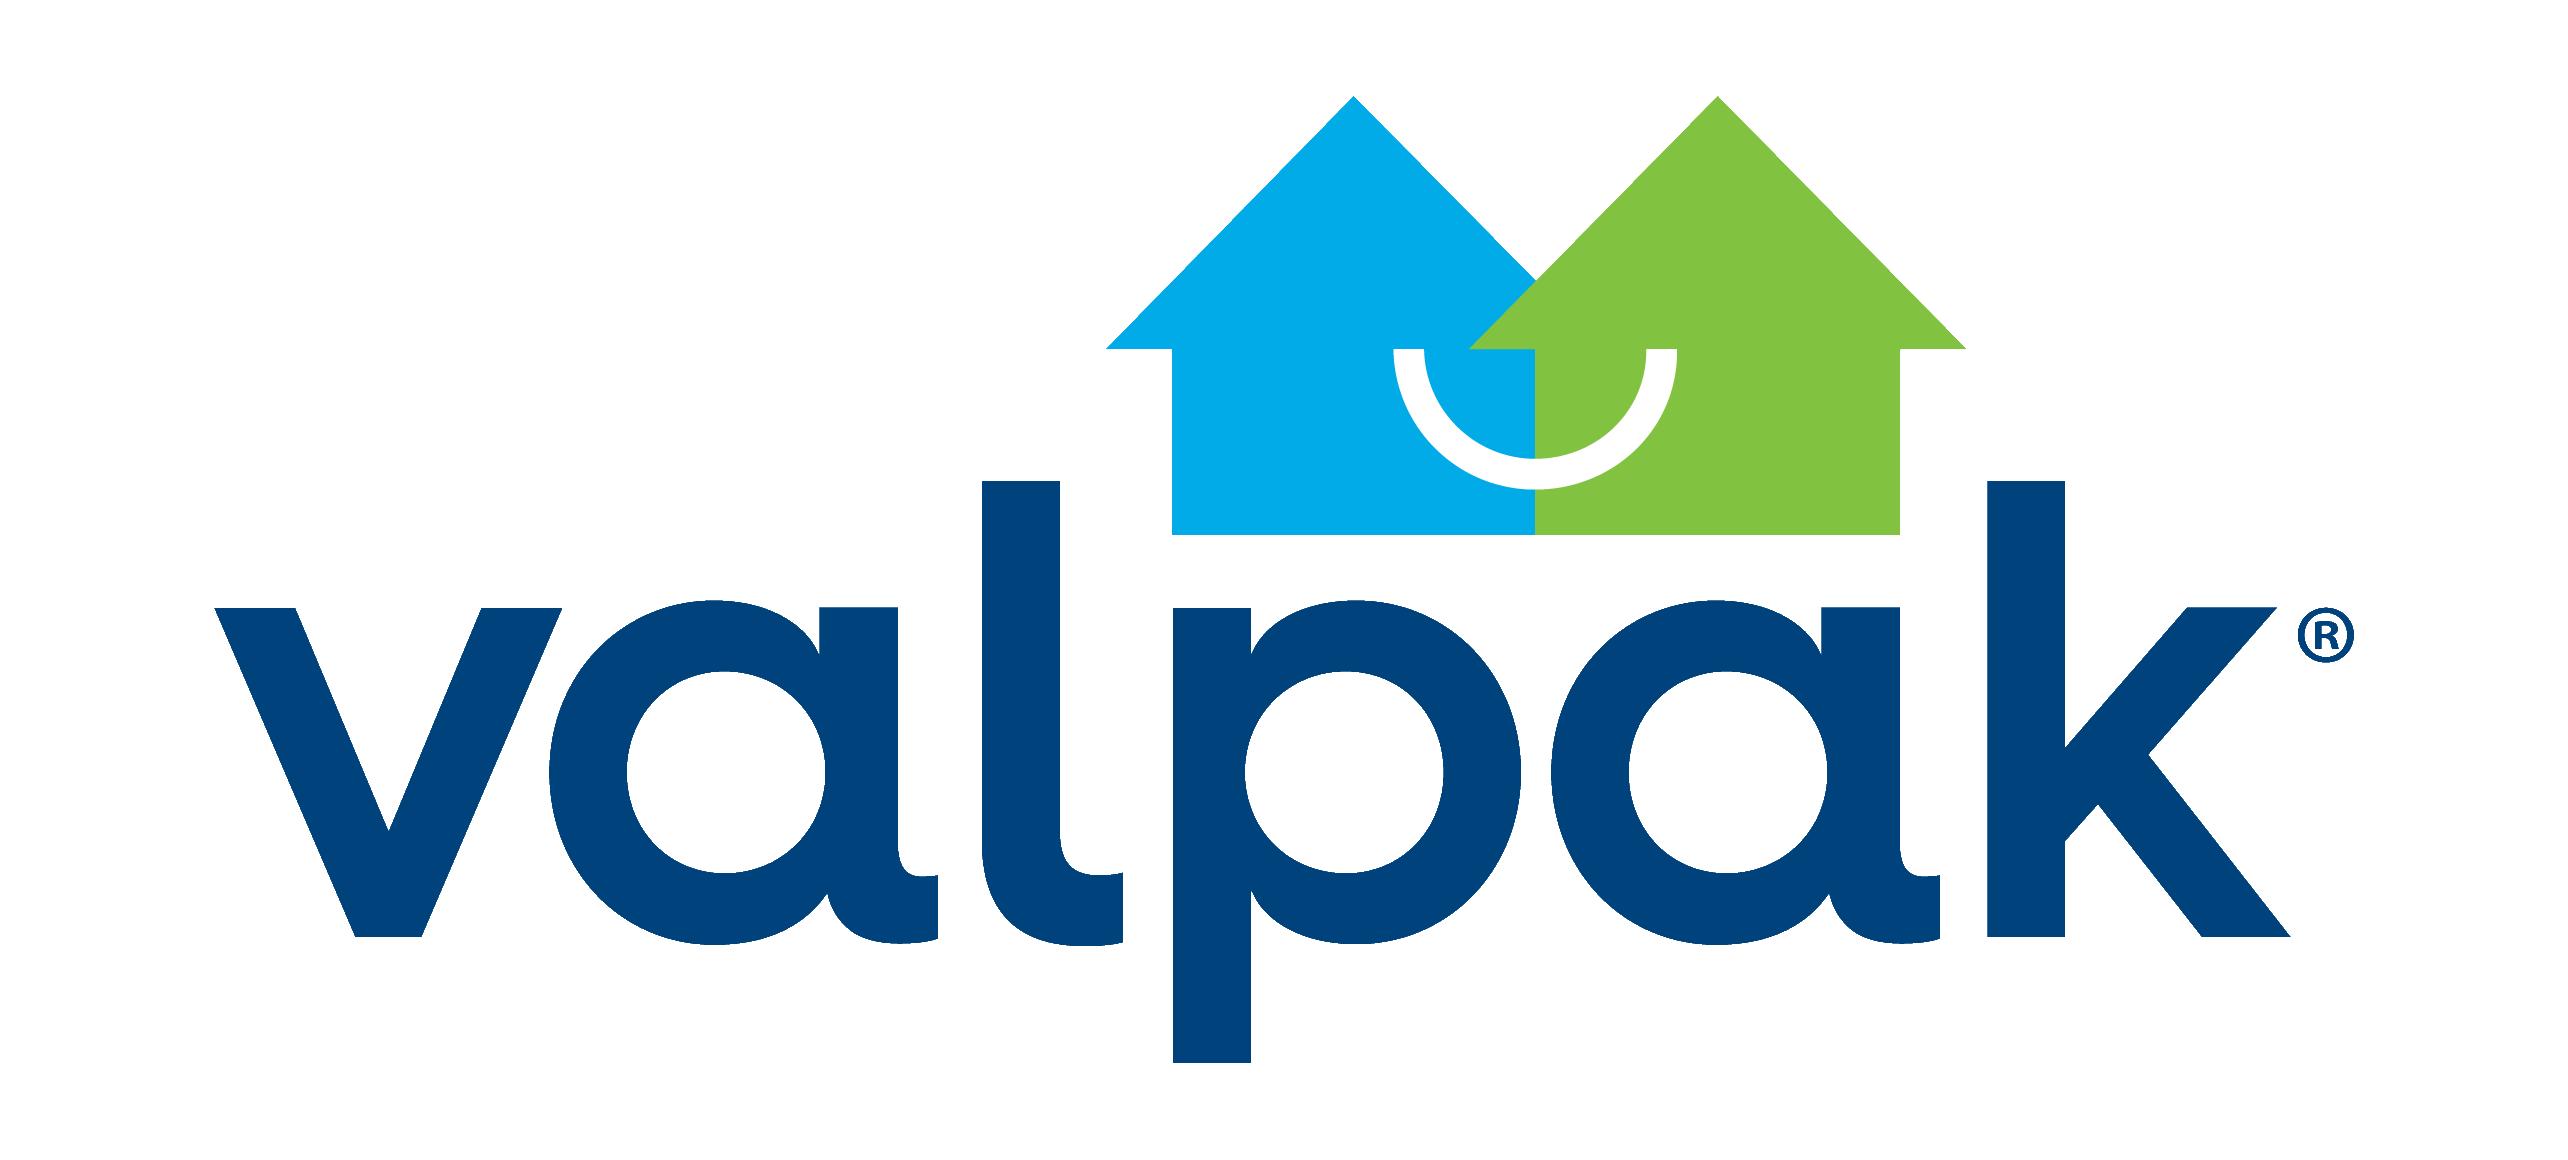 Valpak logo